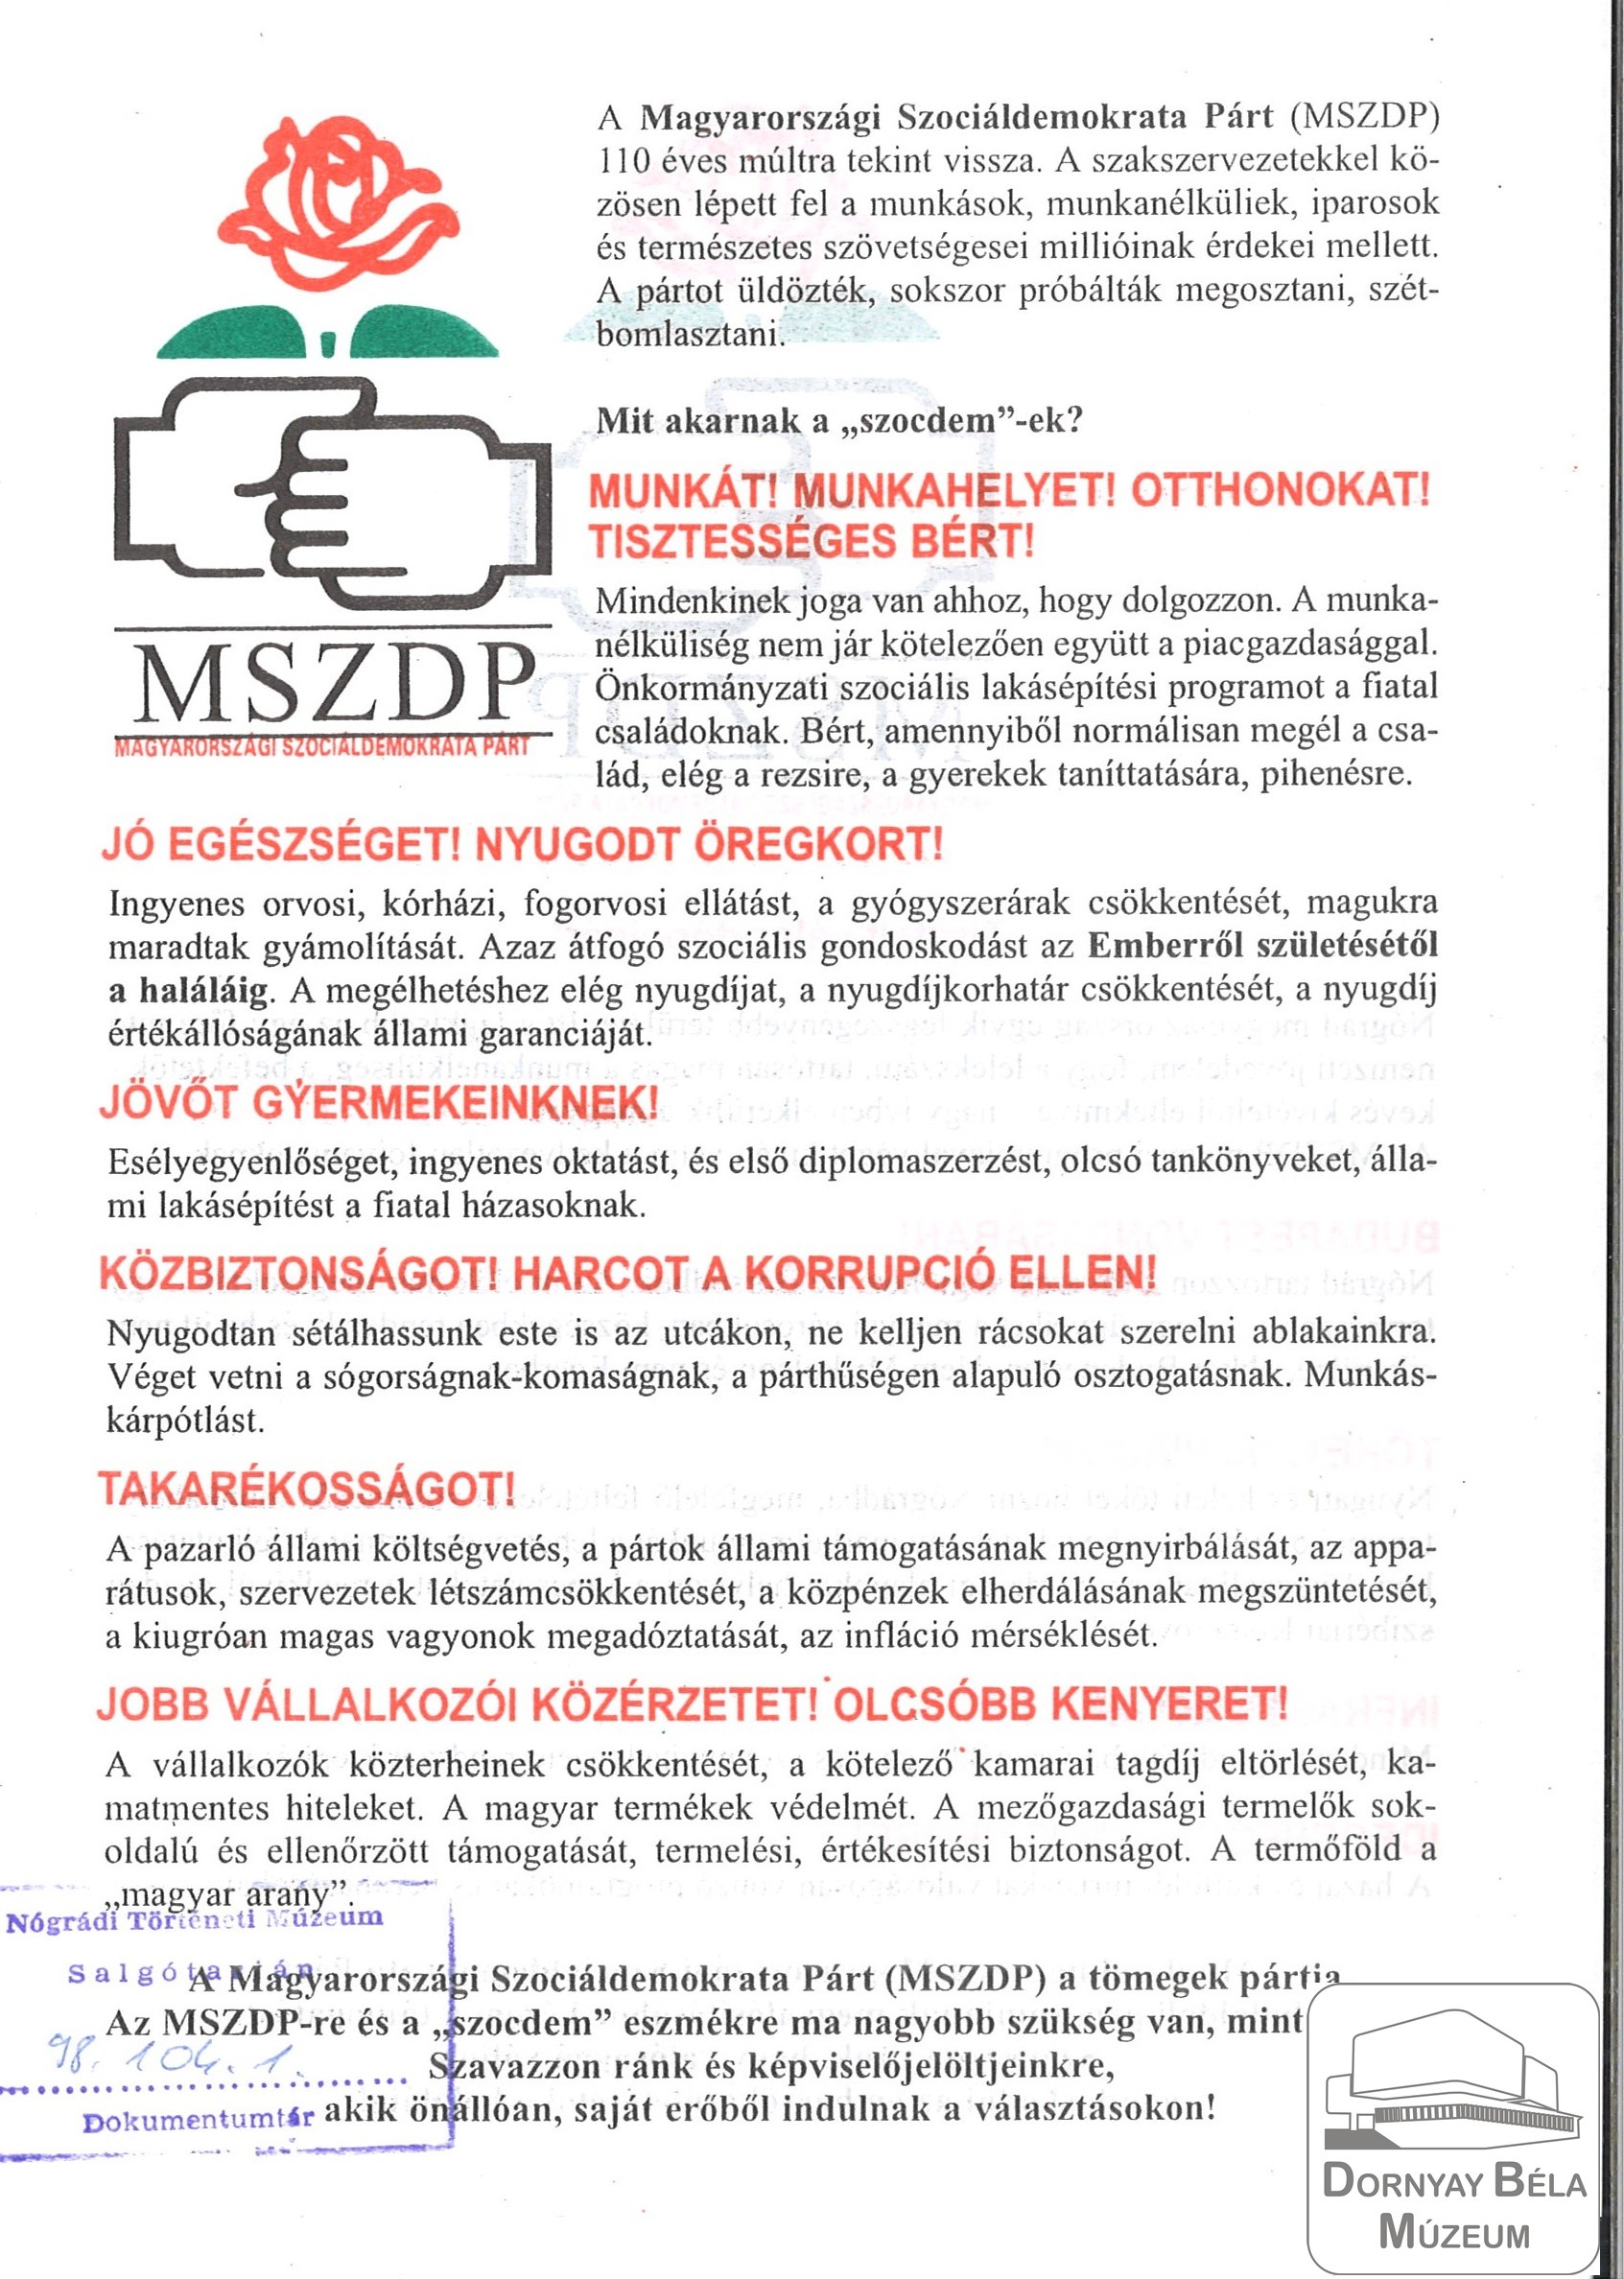 Magyar Szociáldemokrata Párt programjának főbb pontjai (Dornyay Béla Múzeum, Salgótarján CC BY-NC-SA)